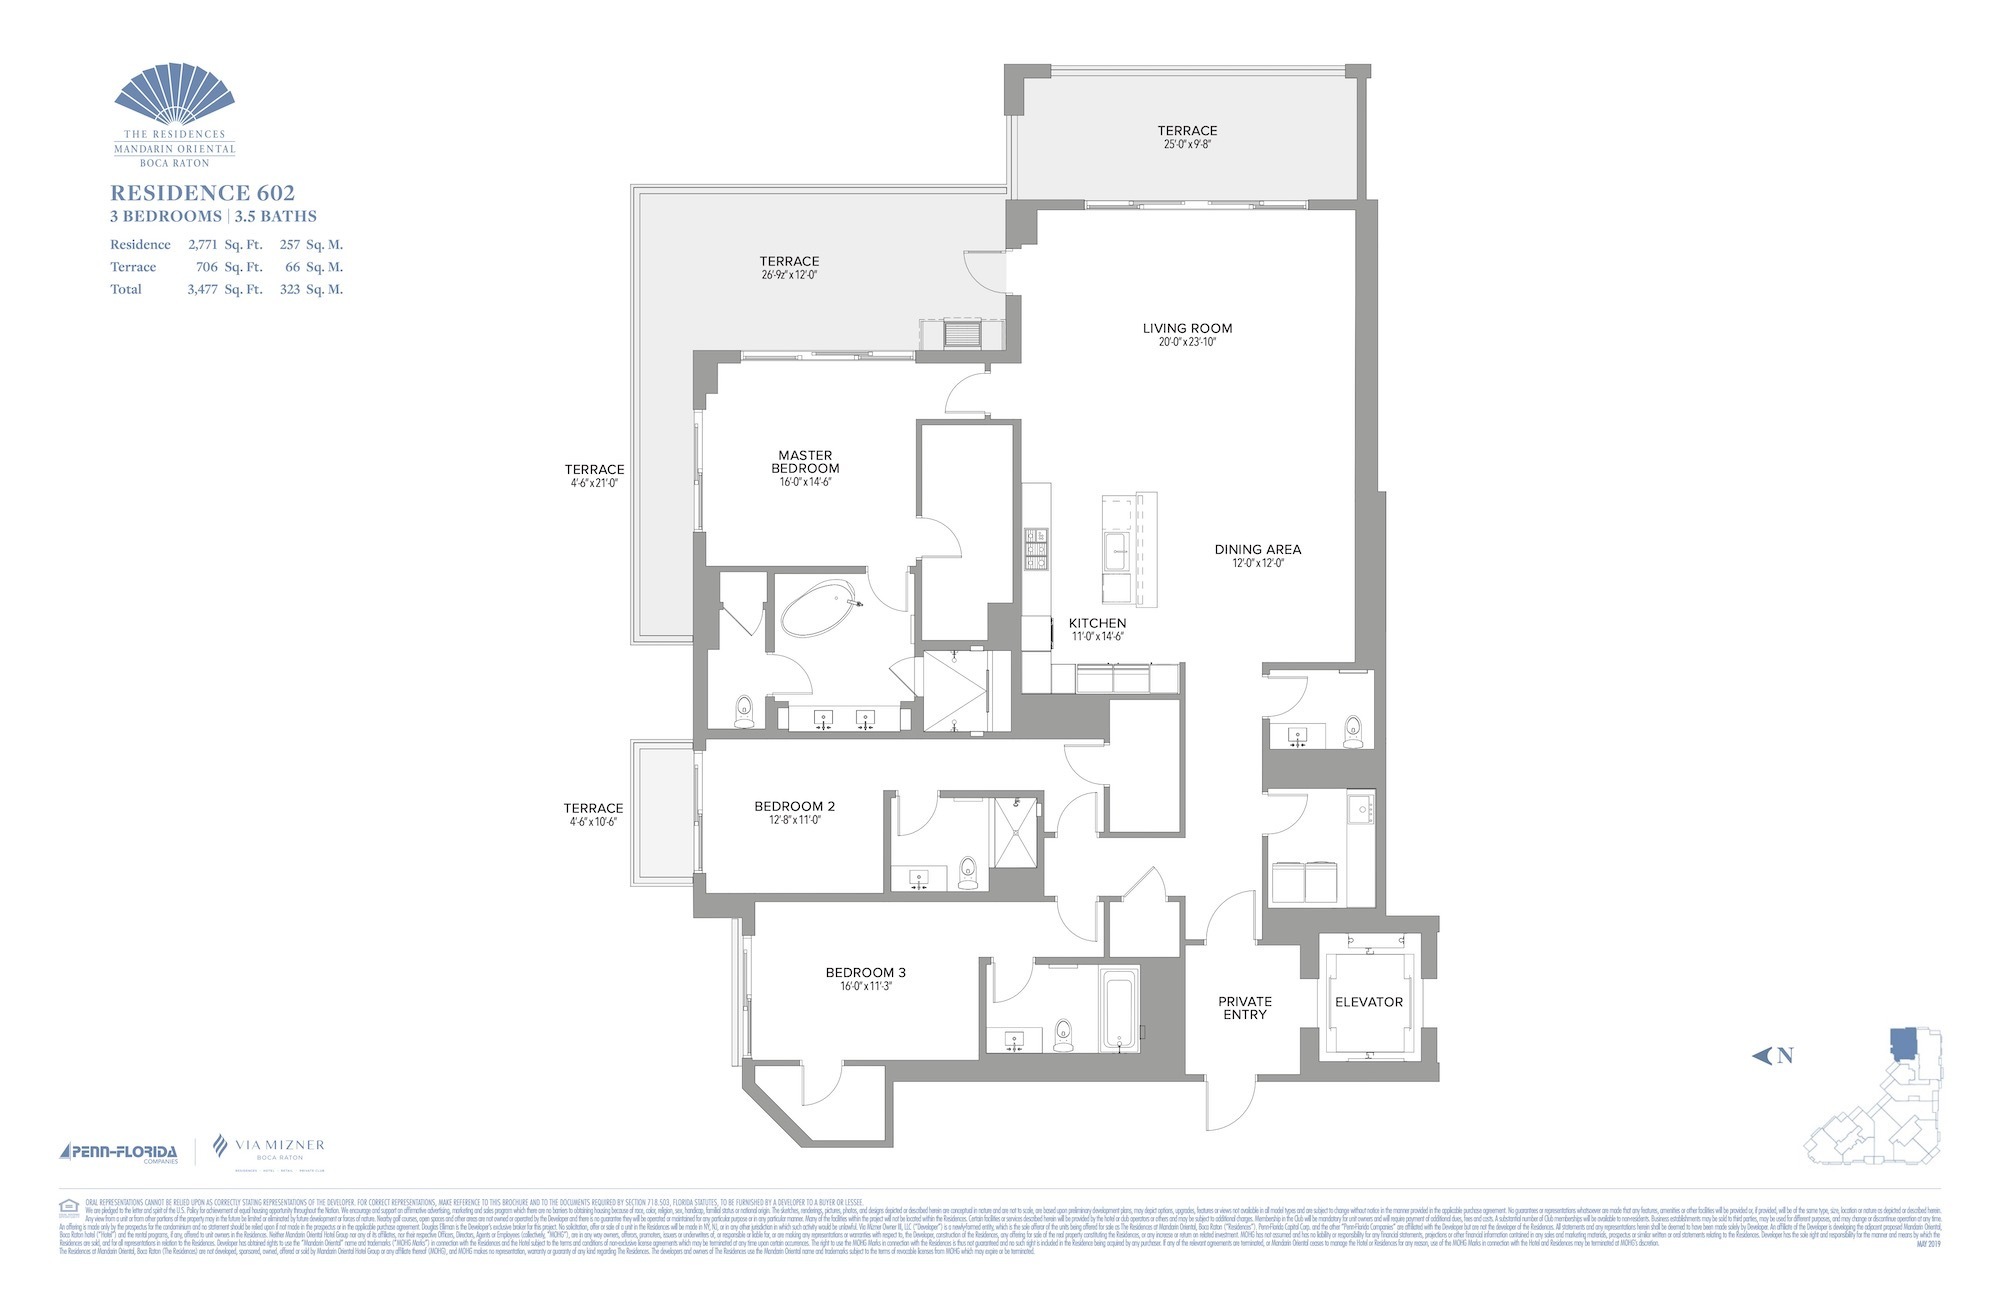 Floor Plan for Residence at Mandarin Oriental Floorplans, Residence 602